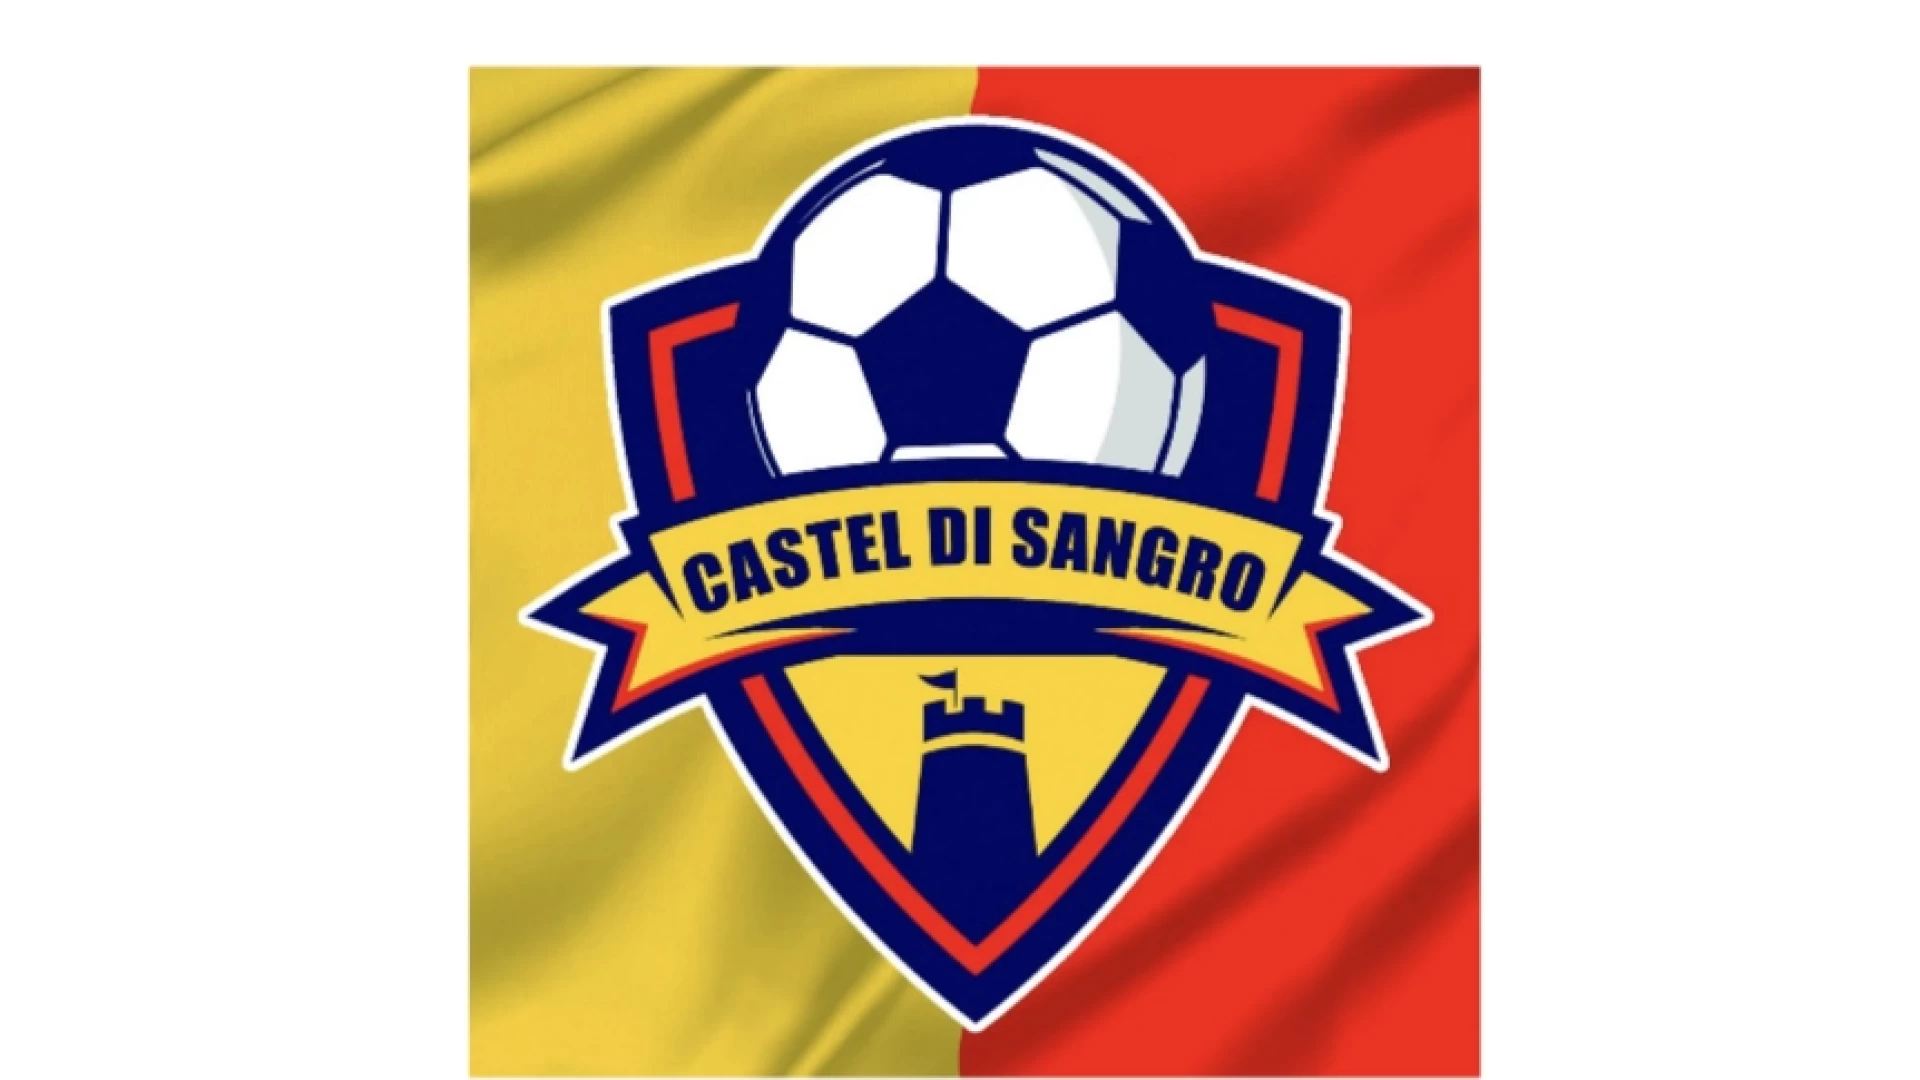 Rinasce il calcio a Castel Di Sangro. Ufficiale la costituzione dell'Asd Calcio Castel Di Sangro.